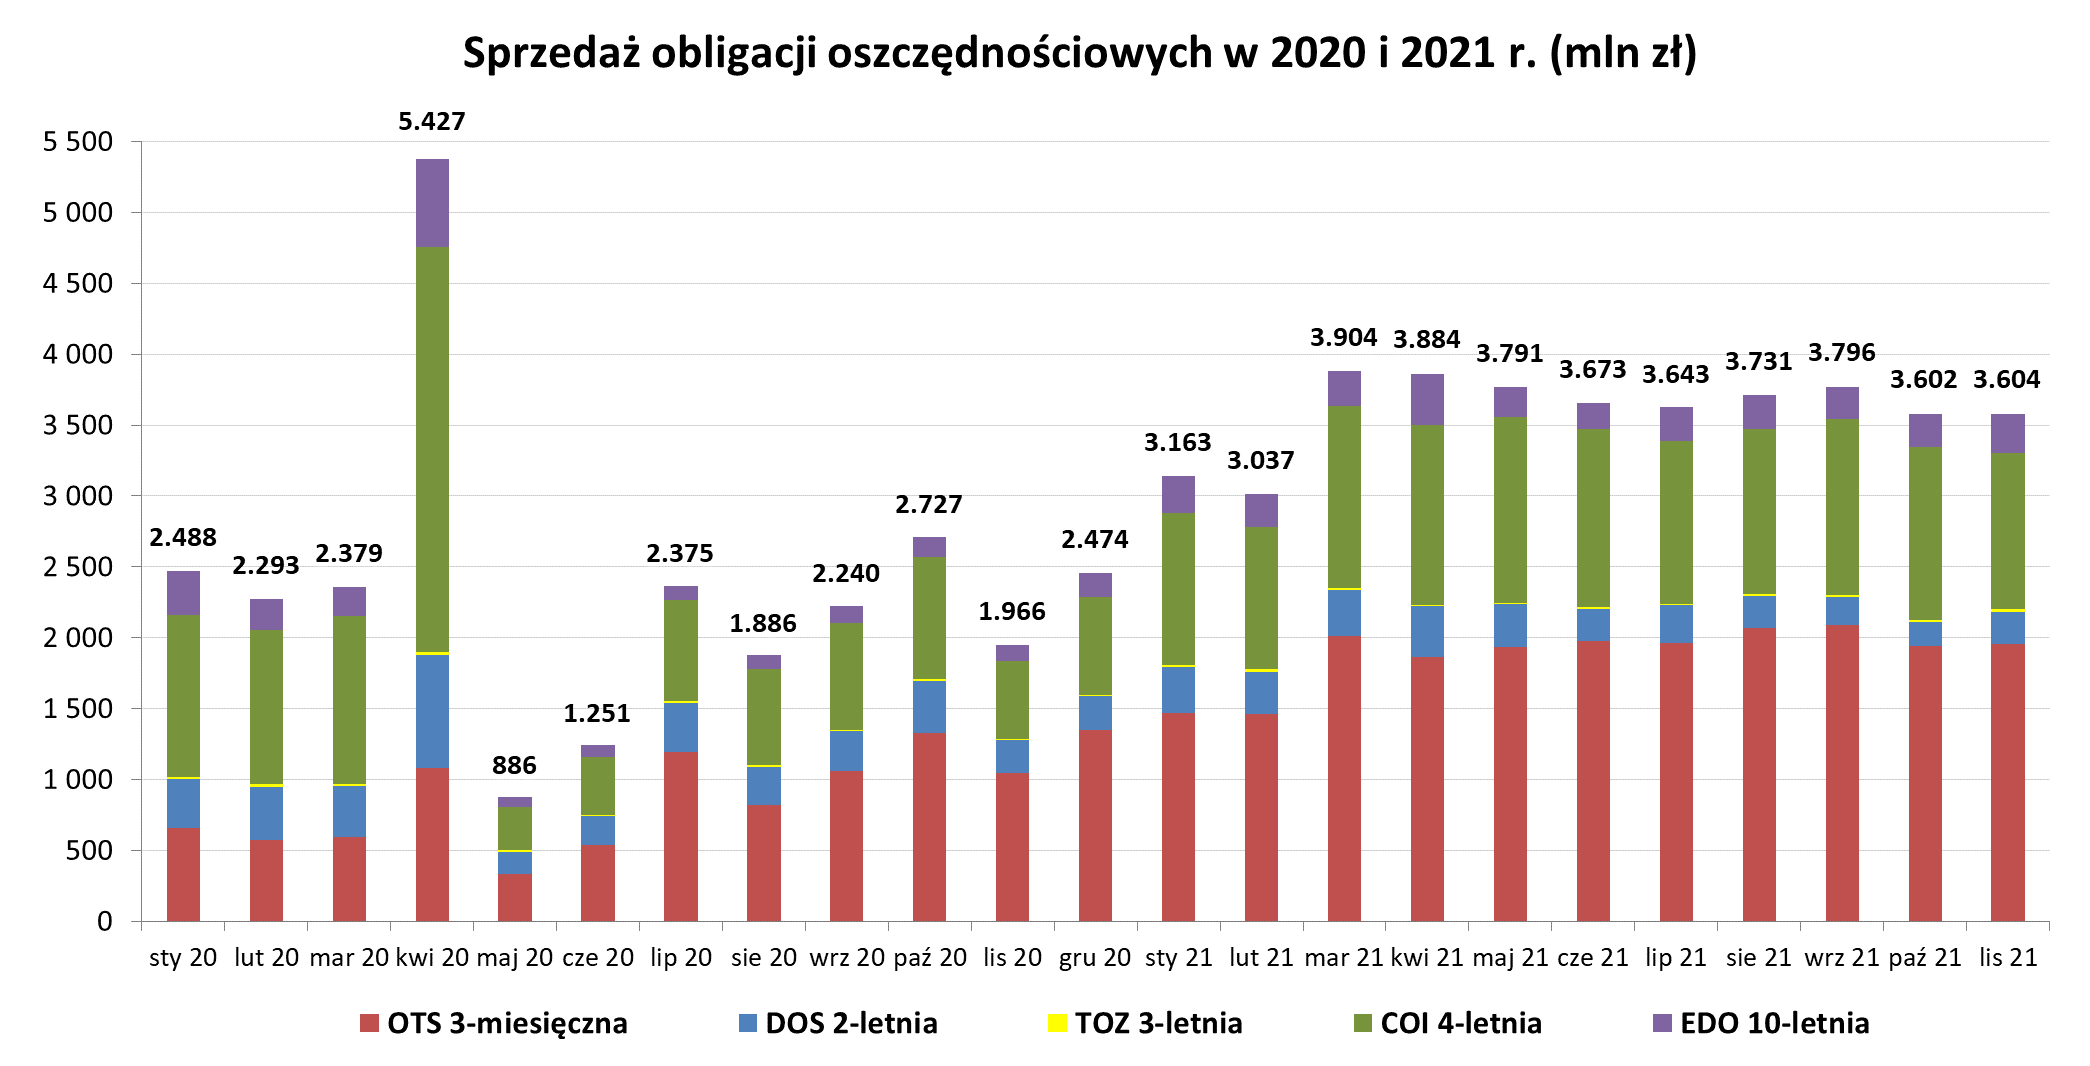 Grafika słupkowa przedstawiająca sprzedaż obligacji oszczędnościowych w 2020 i 2021 r (mln zł) w listopadzie 2021 r.